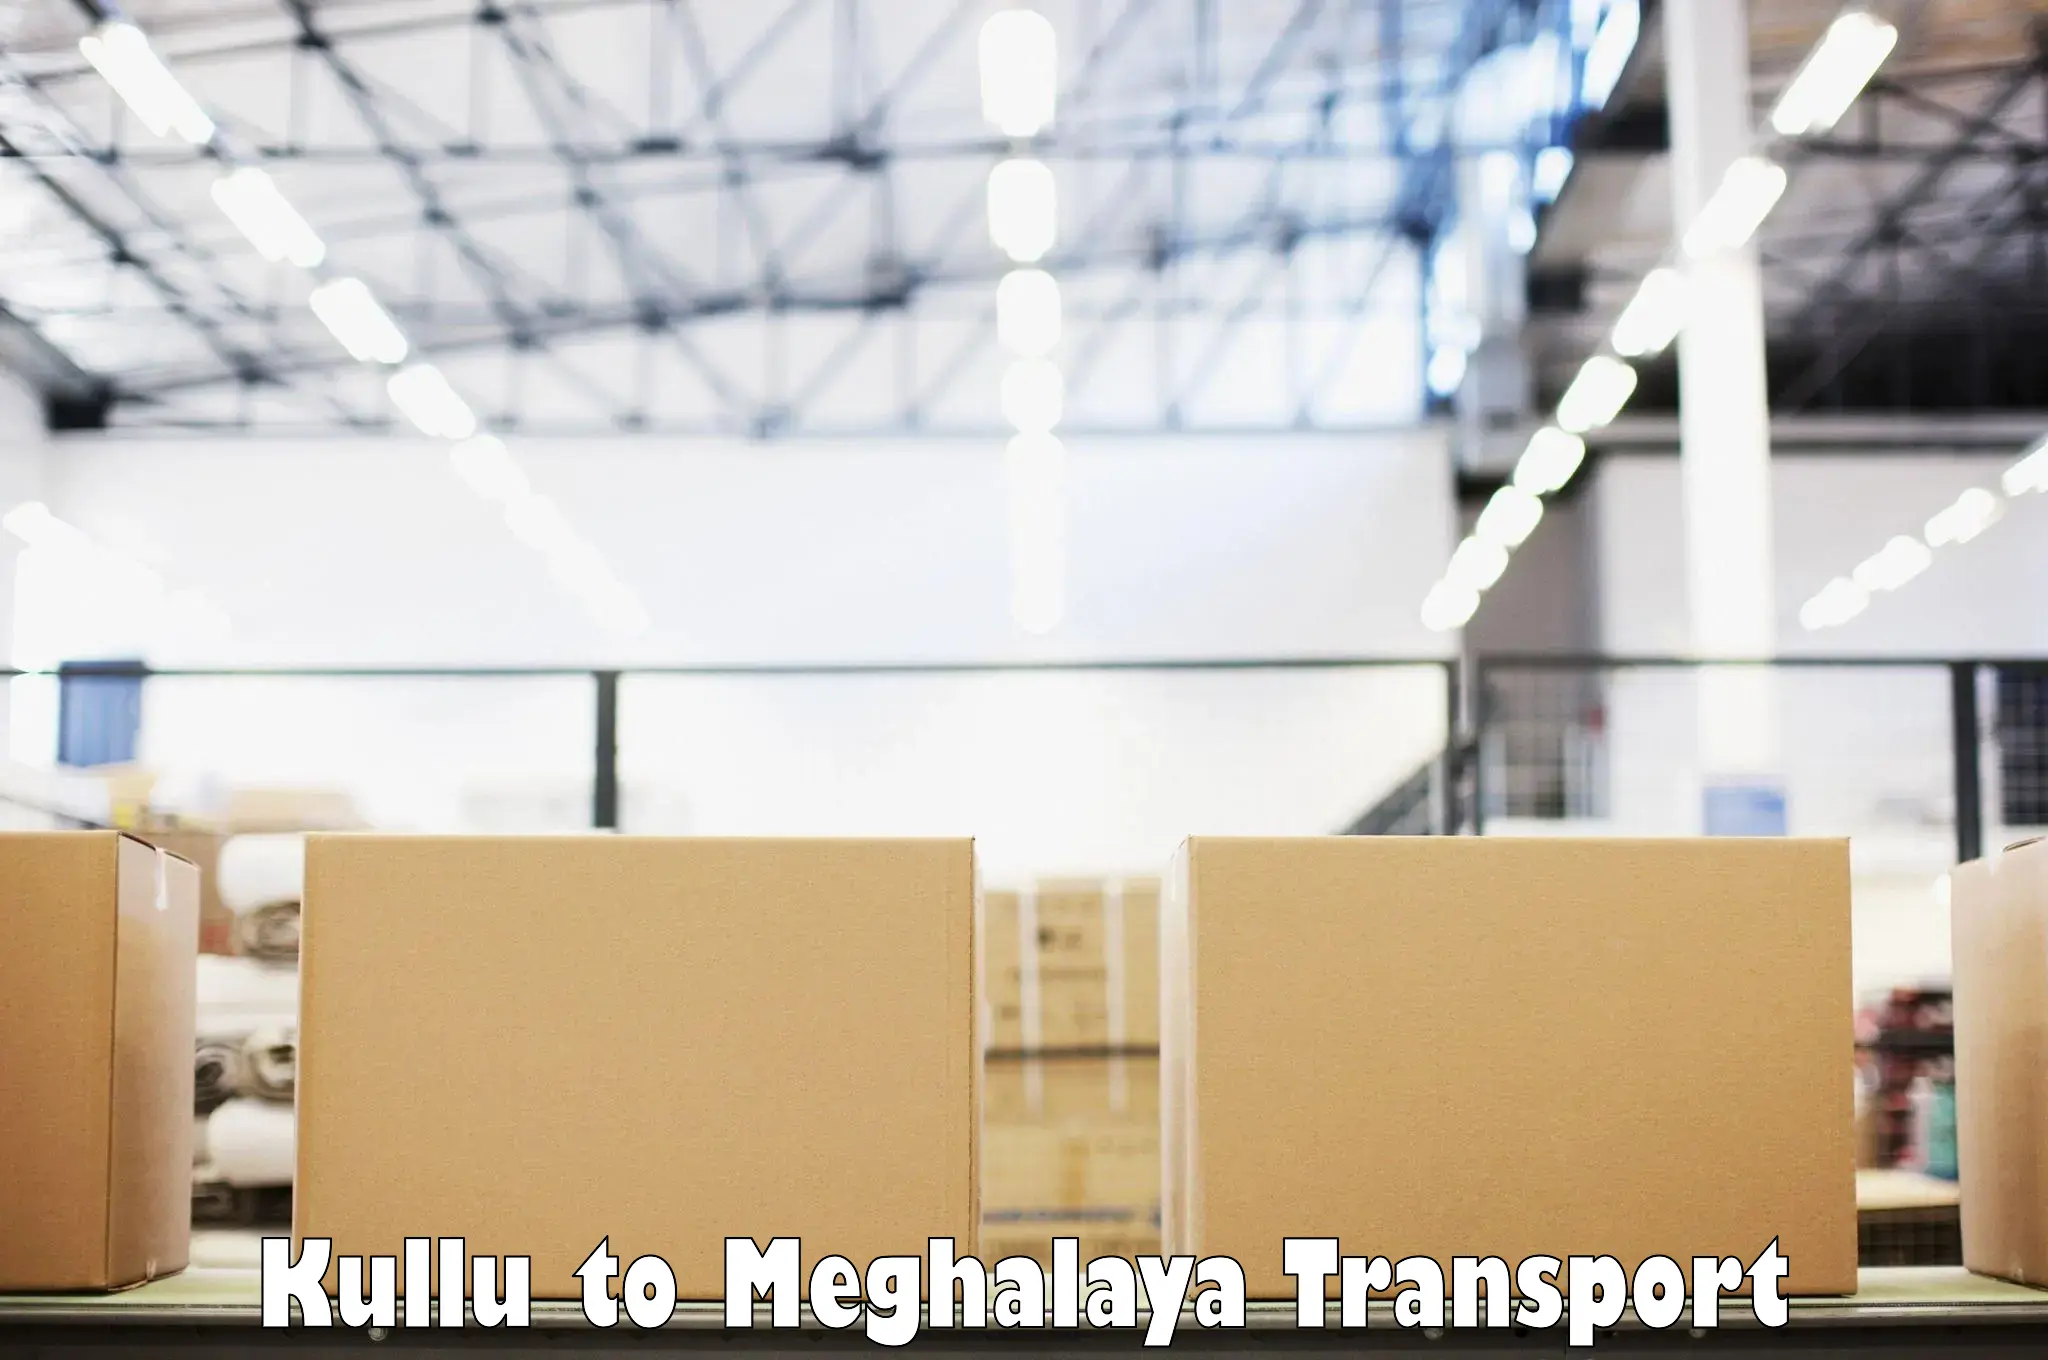 Furniture transport service Kullu to Garobadha